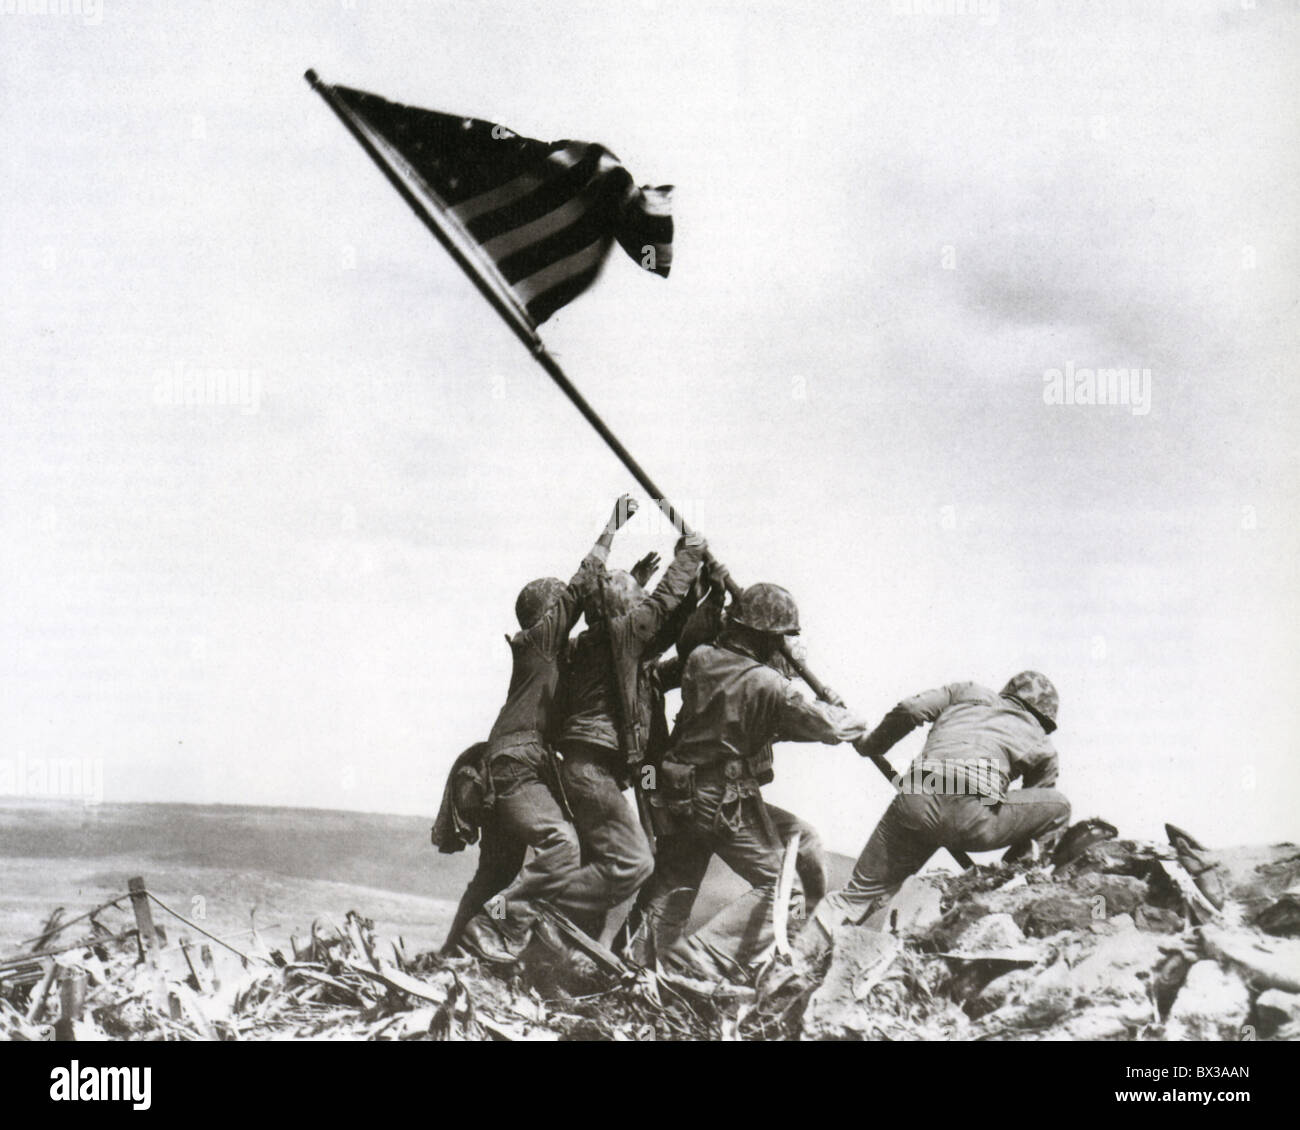 Le drapeau sur Iwo Jima 23 février 1945. Joe Rosenthal Photo AP/agence. Voir la description ci-dessous Banque D'Images